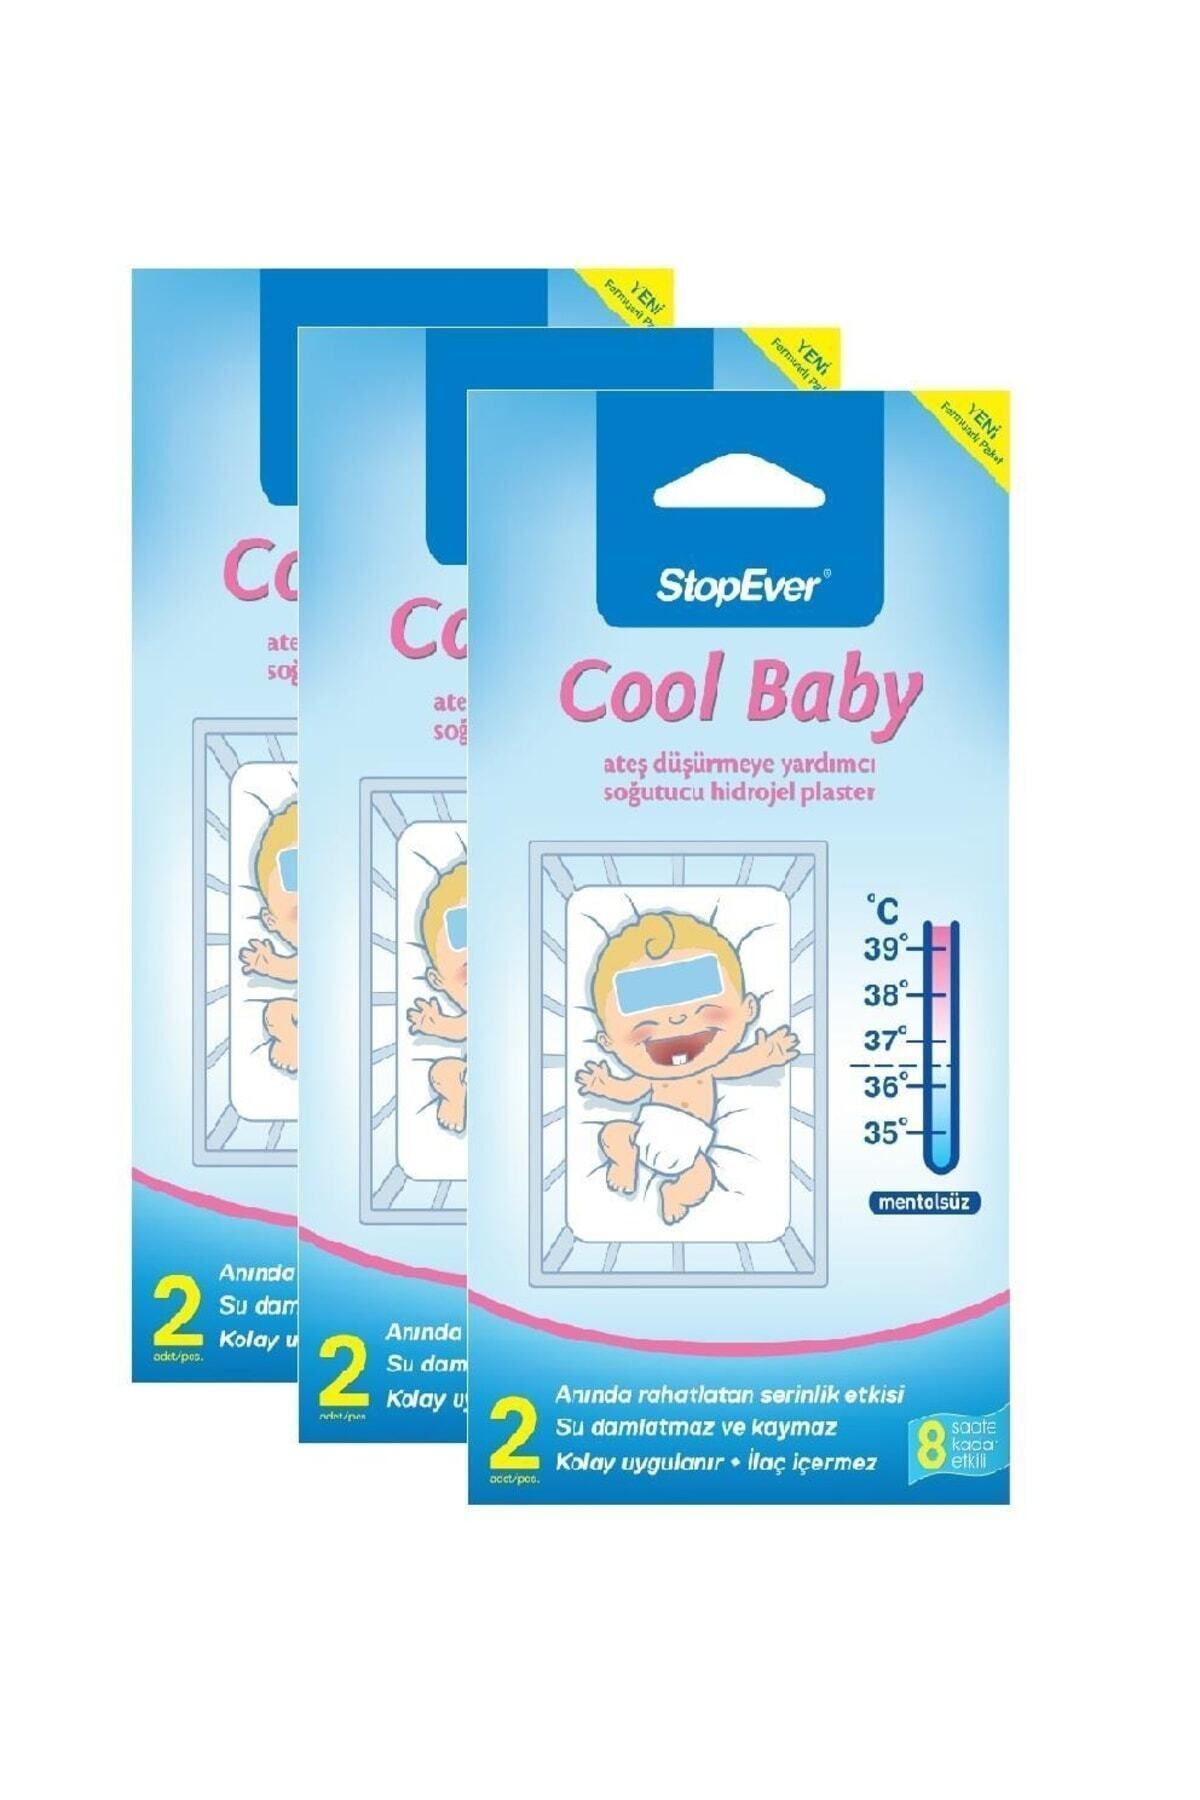 StopEver Cool Baby Ateş Düşürmeye Yardımcı Soğutucu Hidrojel Plaster -3x2 Adet (3'lü)